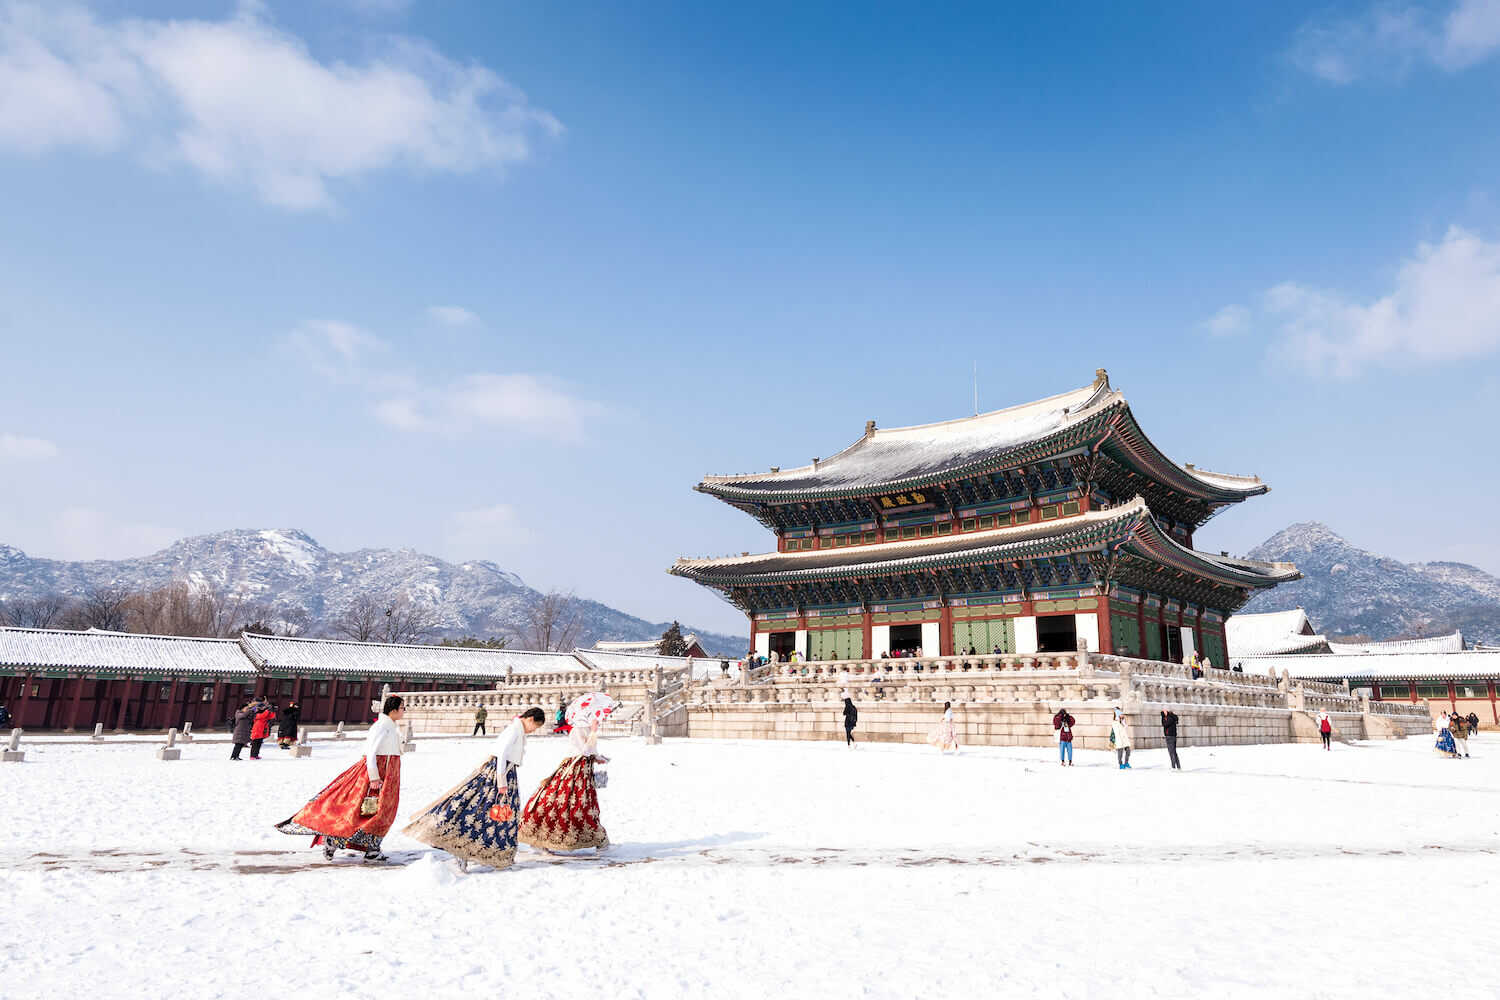 Du lịch Hàn Quốc mùa Đông - Seoul - Đảo Nami - Elysian Ski Resort từ Sài Gòn